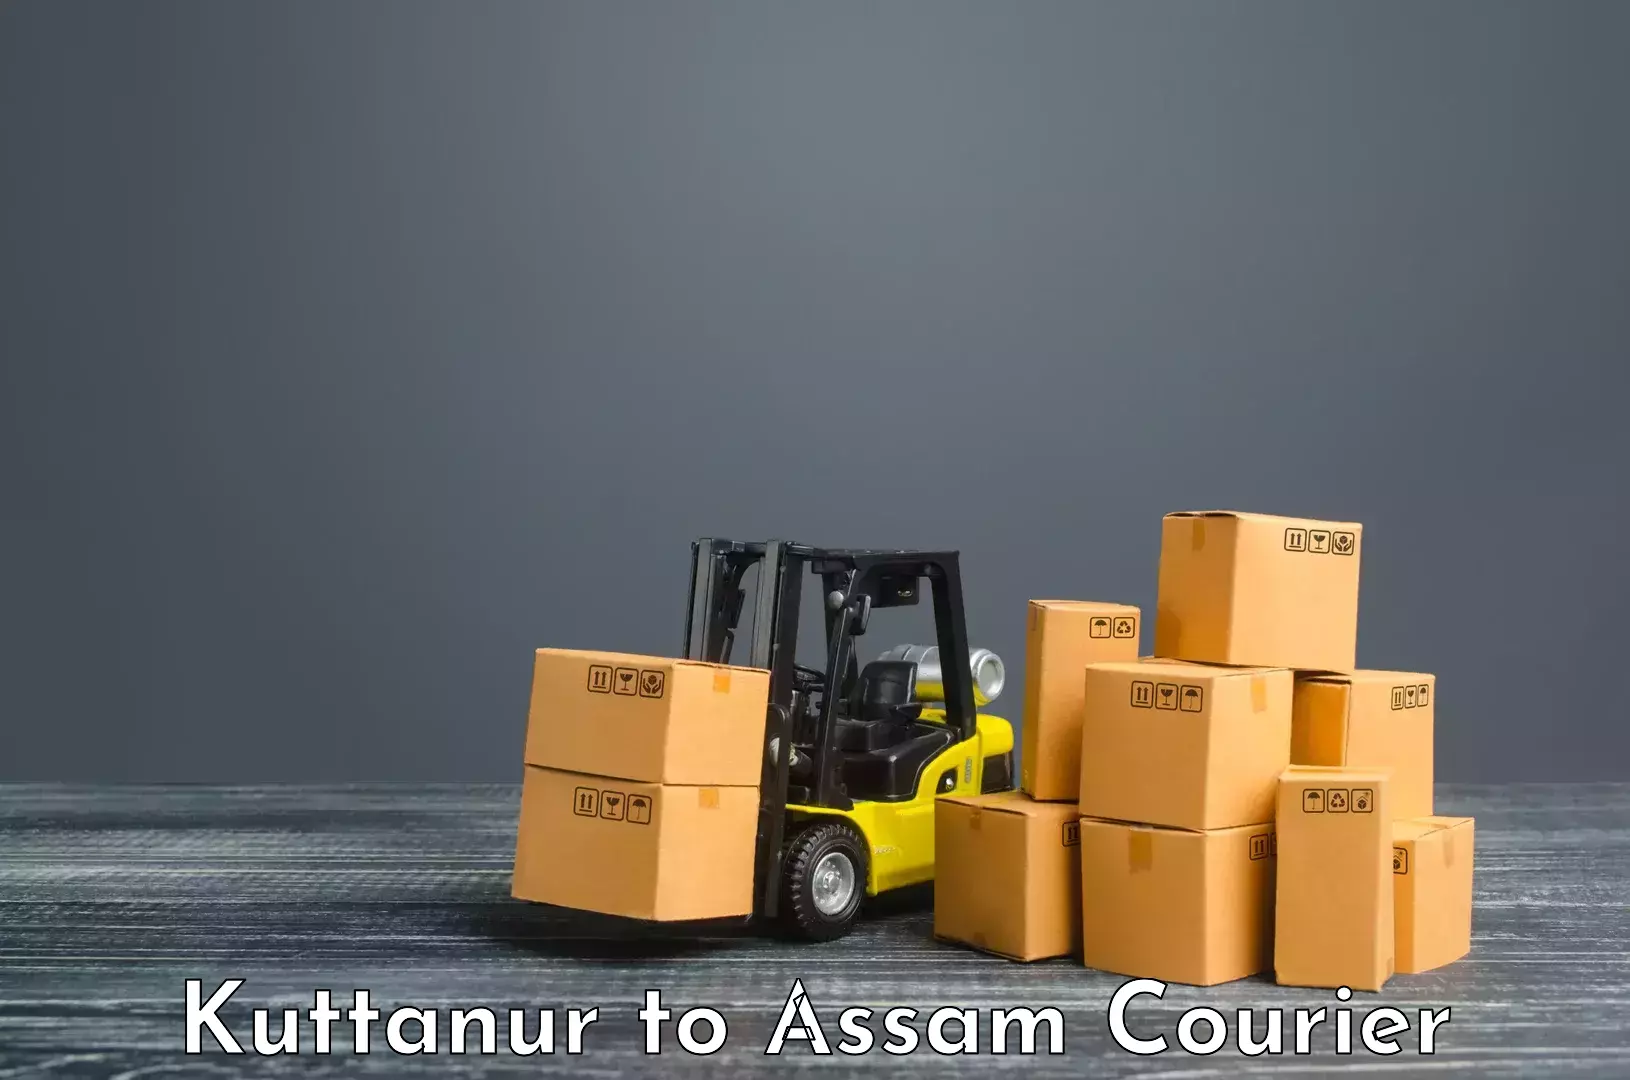 User-friendly delivery service Kuttanur to Dehurda